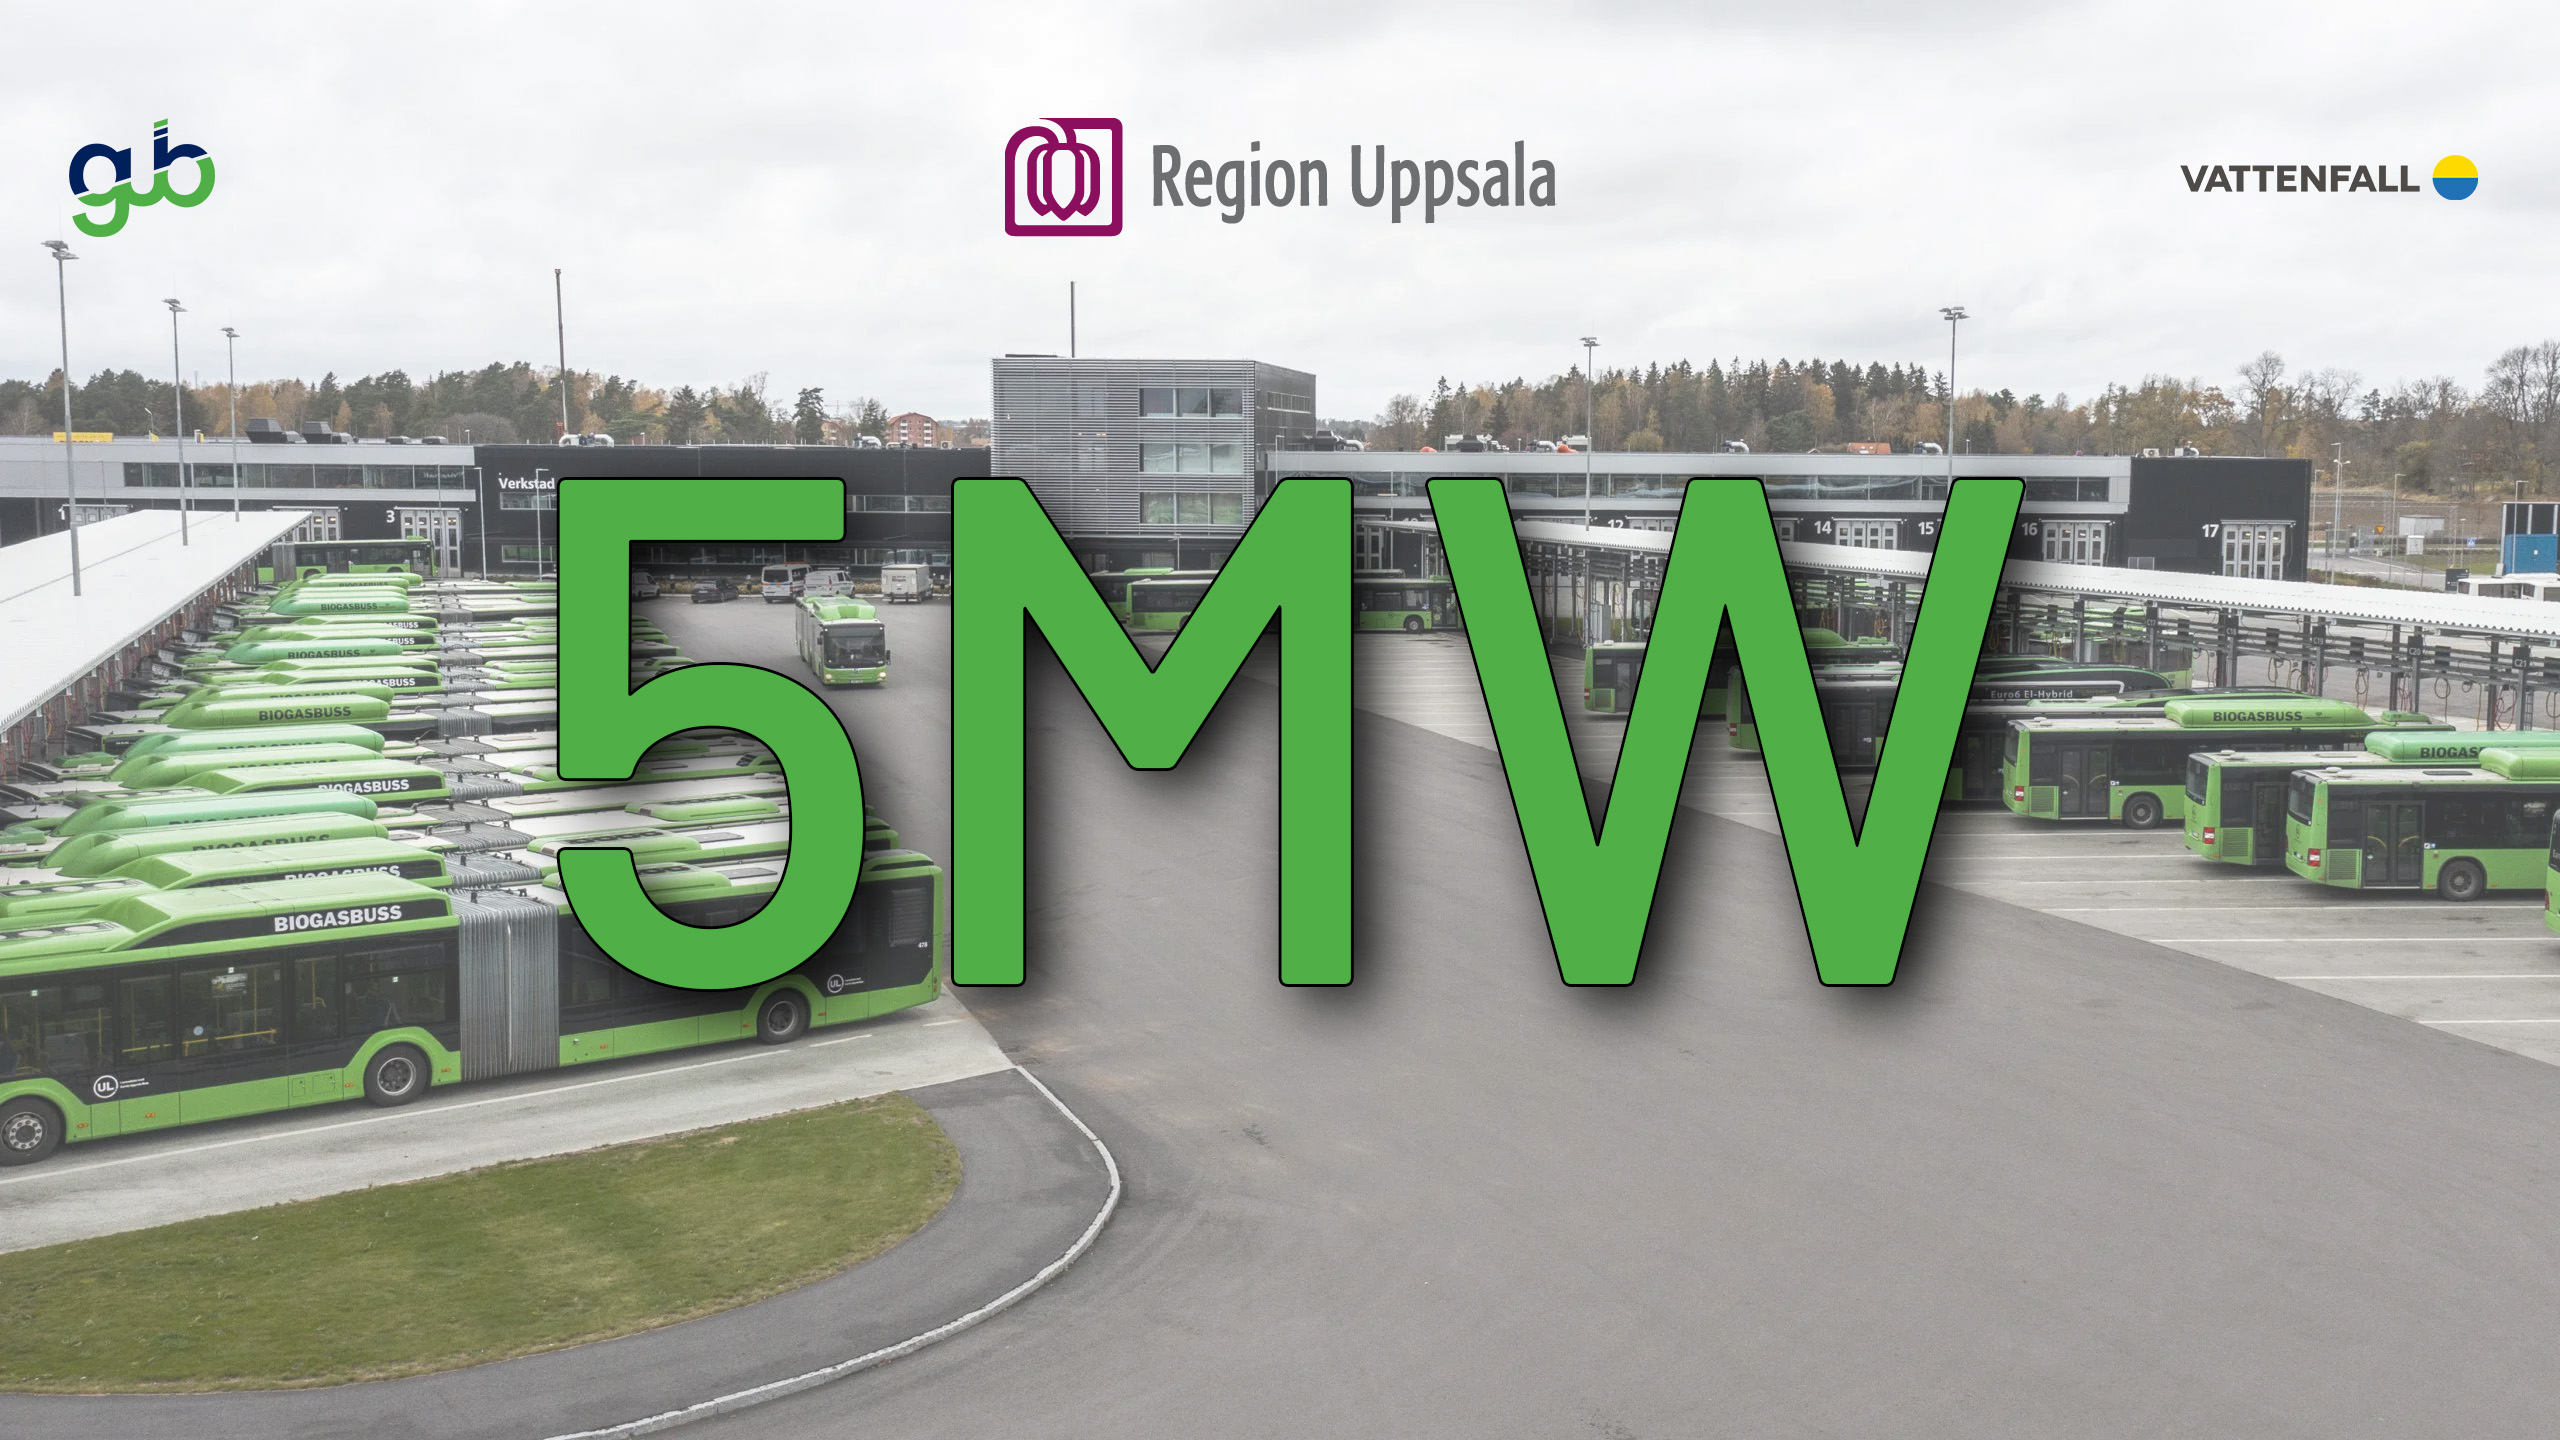 5 MW lovas nu dygnet runt alla dagar till vår depå i Fyrislund.